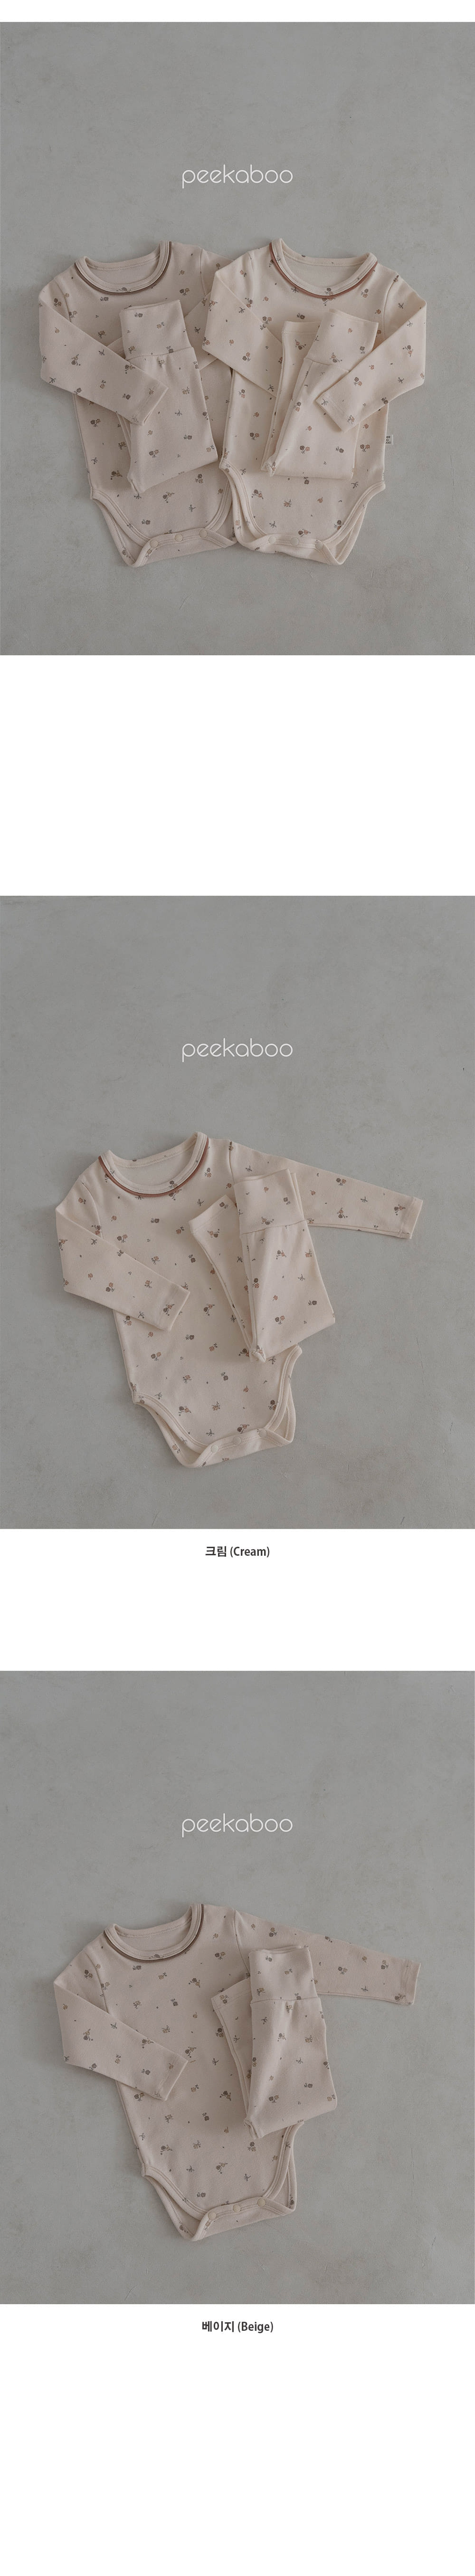 Peekaboo - Korean Baby Fashion - #babylifestyle - Ange Body Suit Set - 2